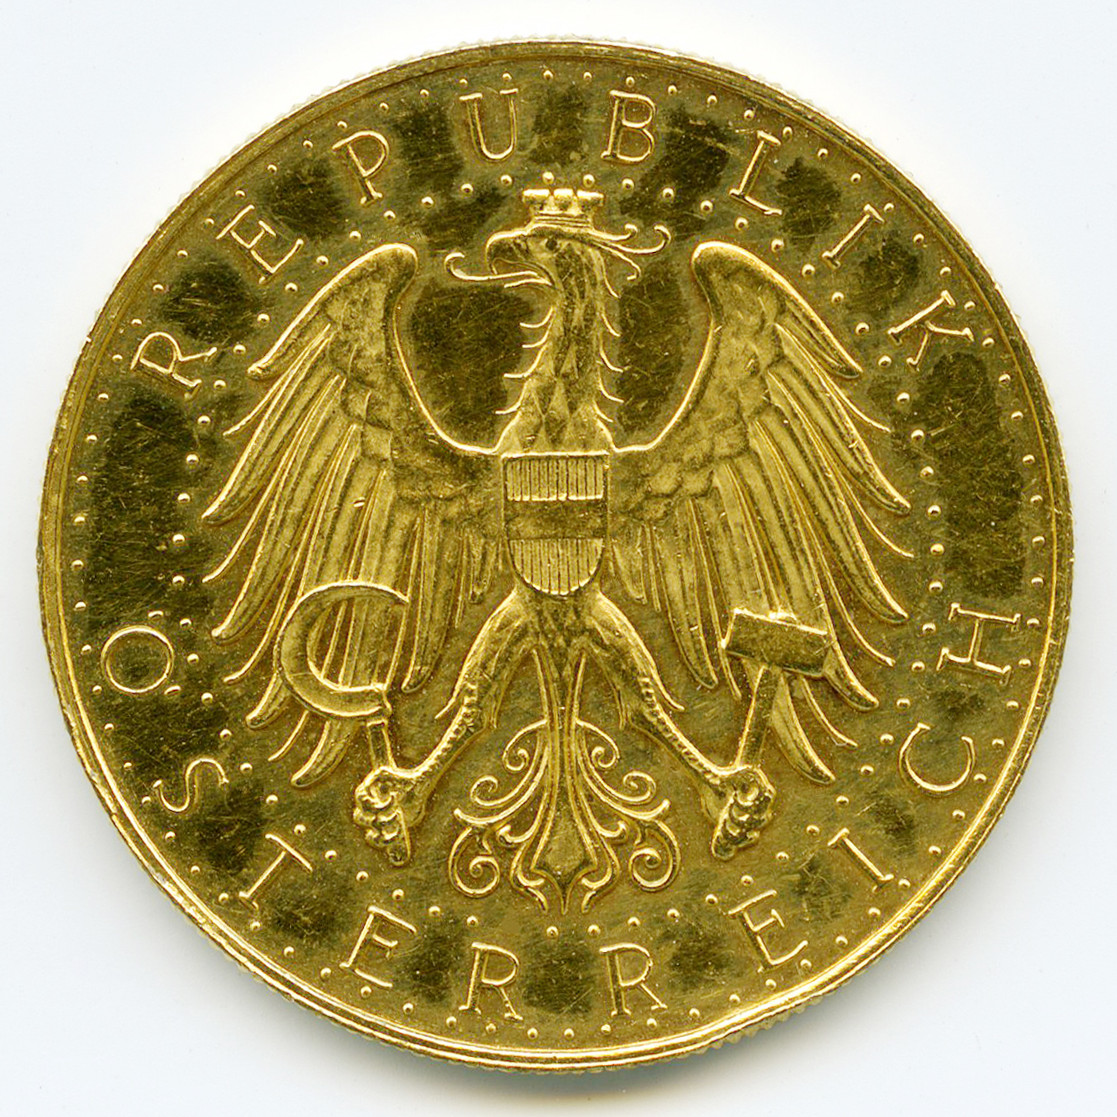 Autriche - 100 Schilling - 1934 avers